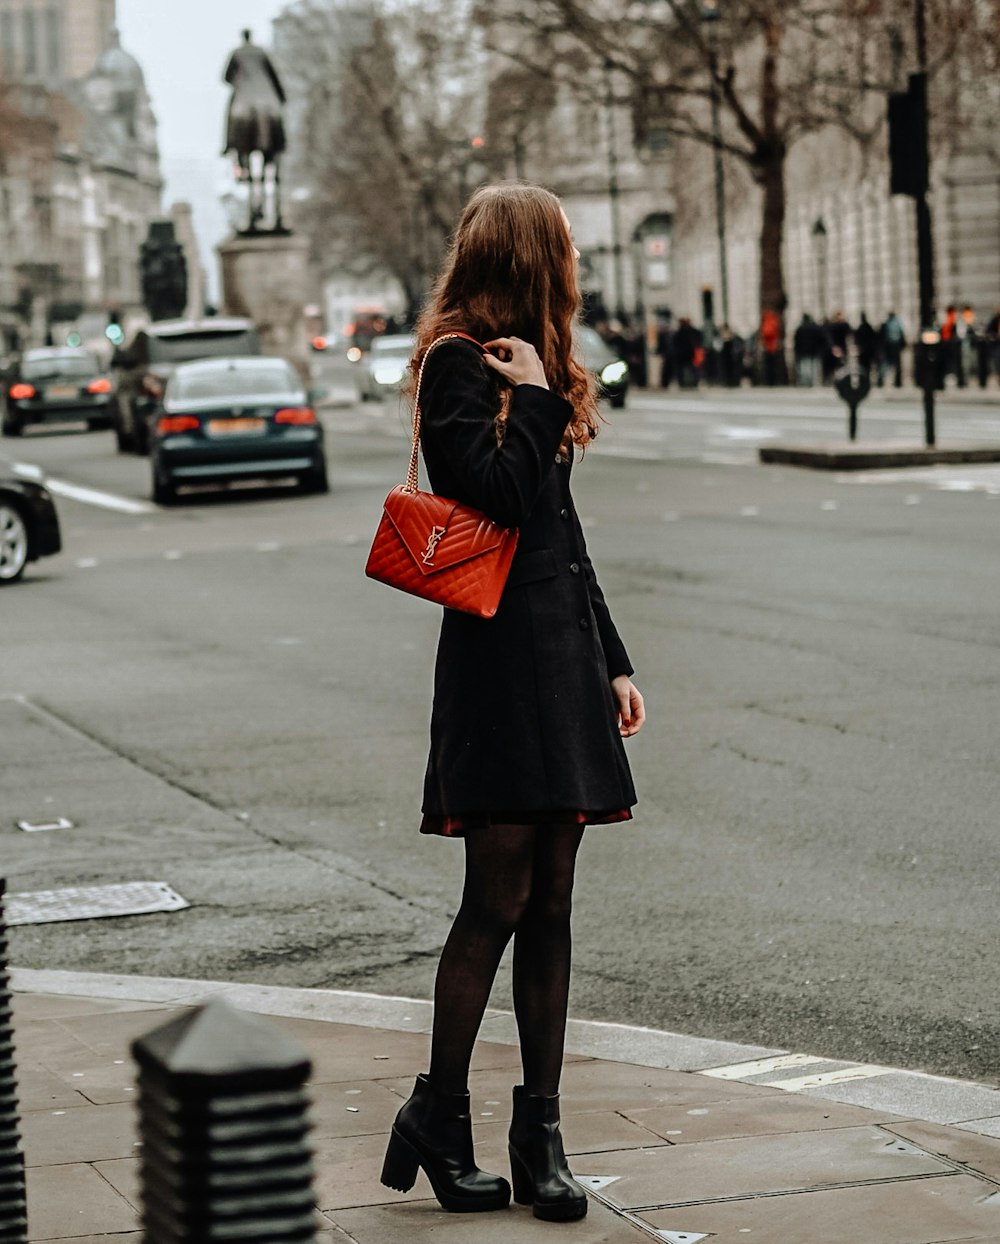 검은 코트와 빨간 가죽 슬링 백을 입은 여자가 낮 동안 보도에 서 있다